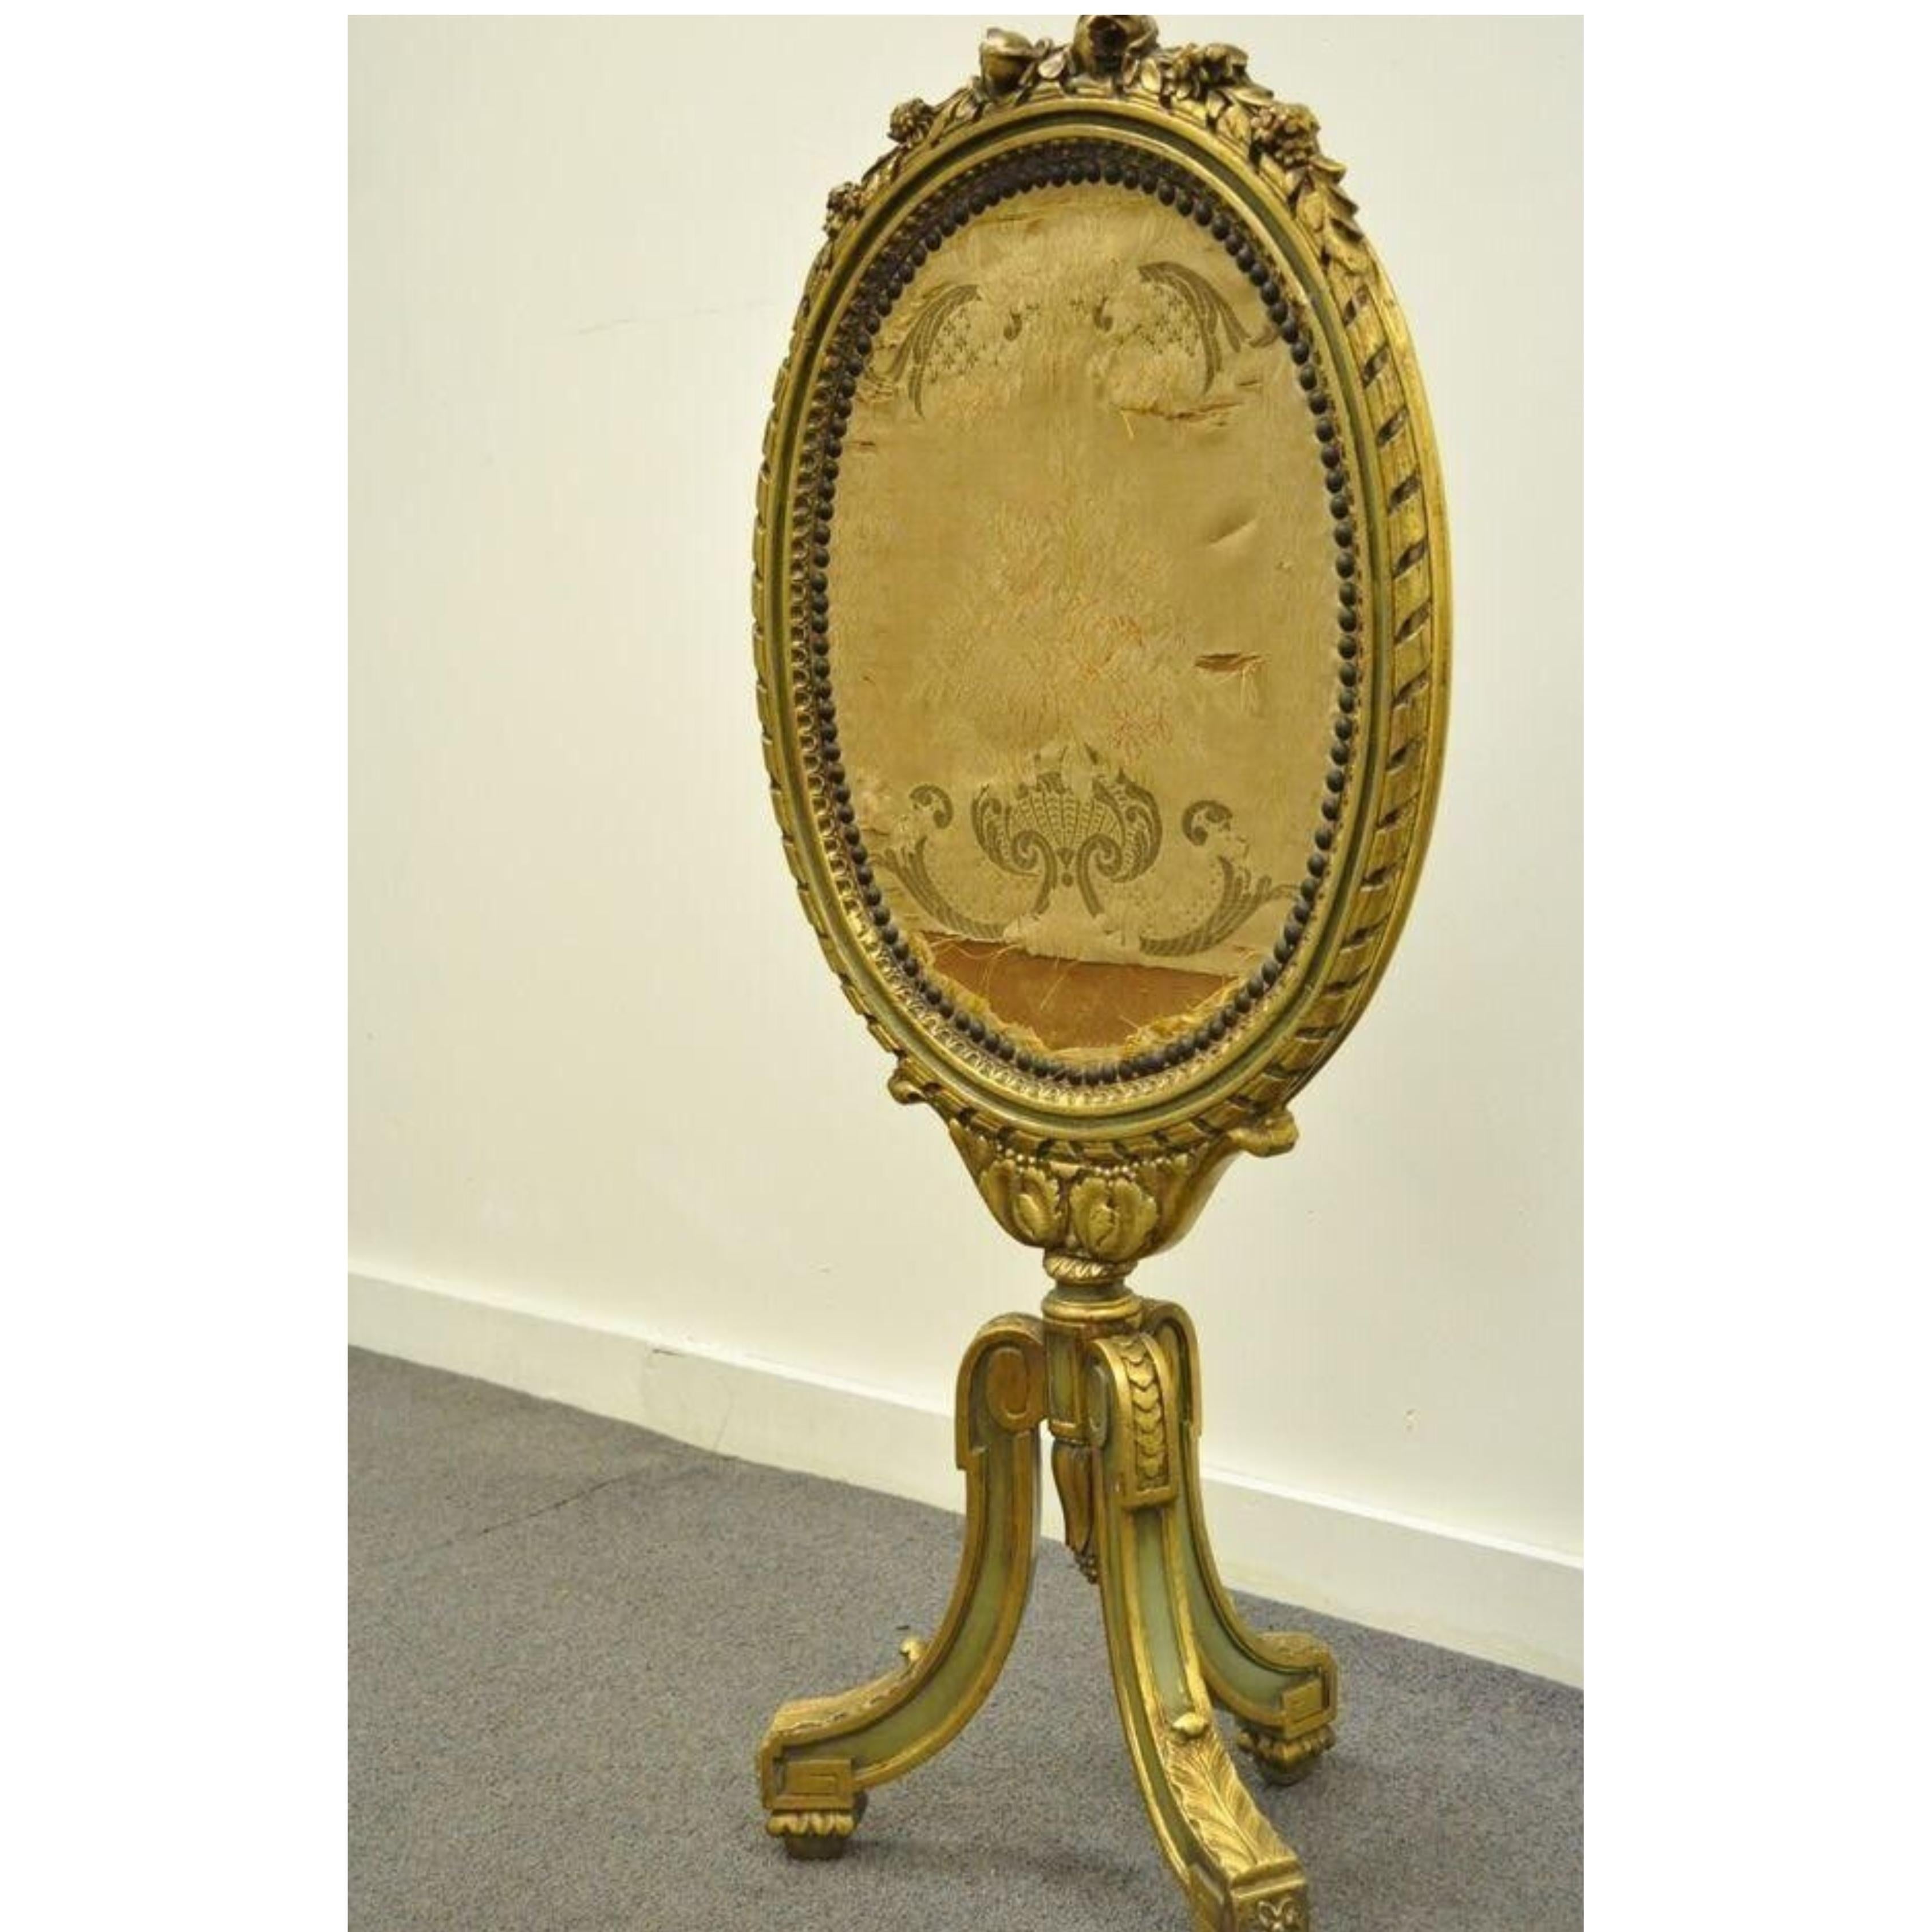 Ancien écran de cheminée ovale en bois doré sculpté de style Louis XVI / XV avec tapisserie. L'objet présente de magnifiques accents floraux sculptés, une base piédestale sculptée, un très bel objet ancien. Circa Early 1900s.
Mesures : 
Ensemble :